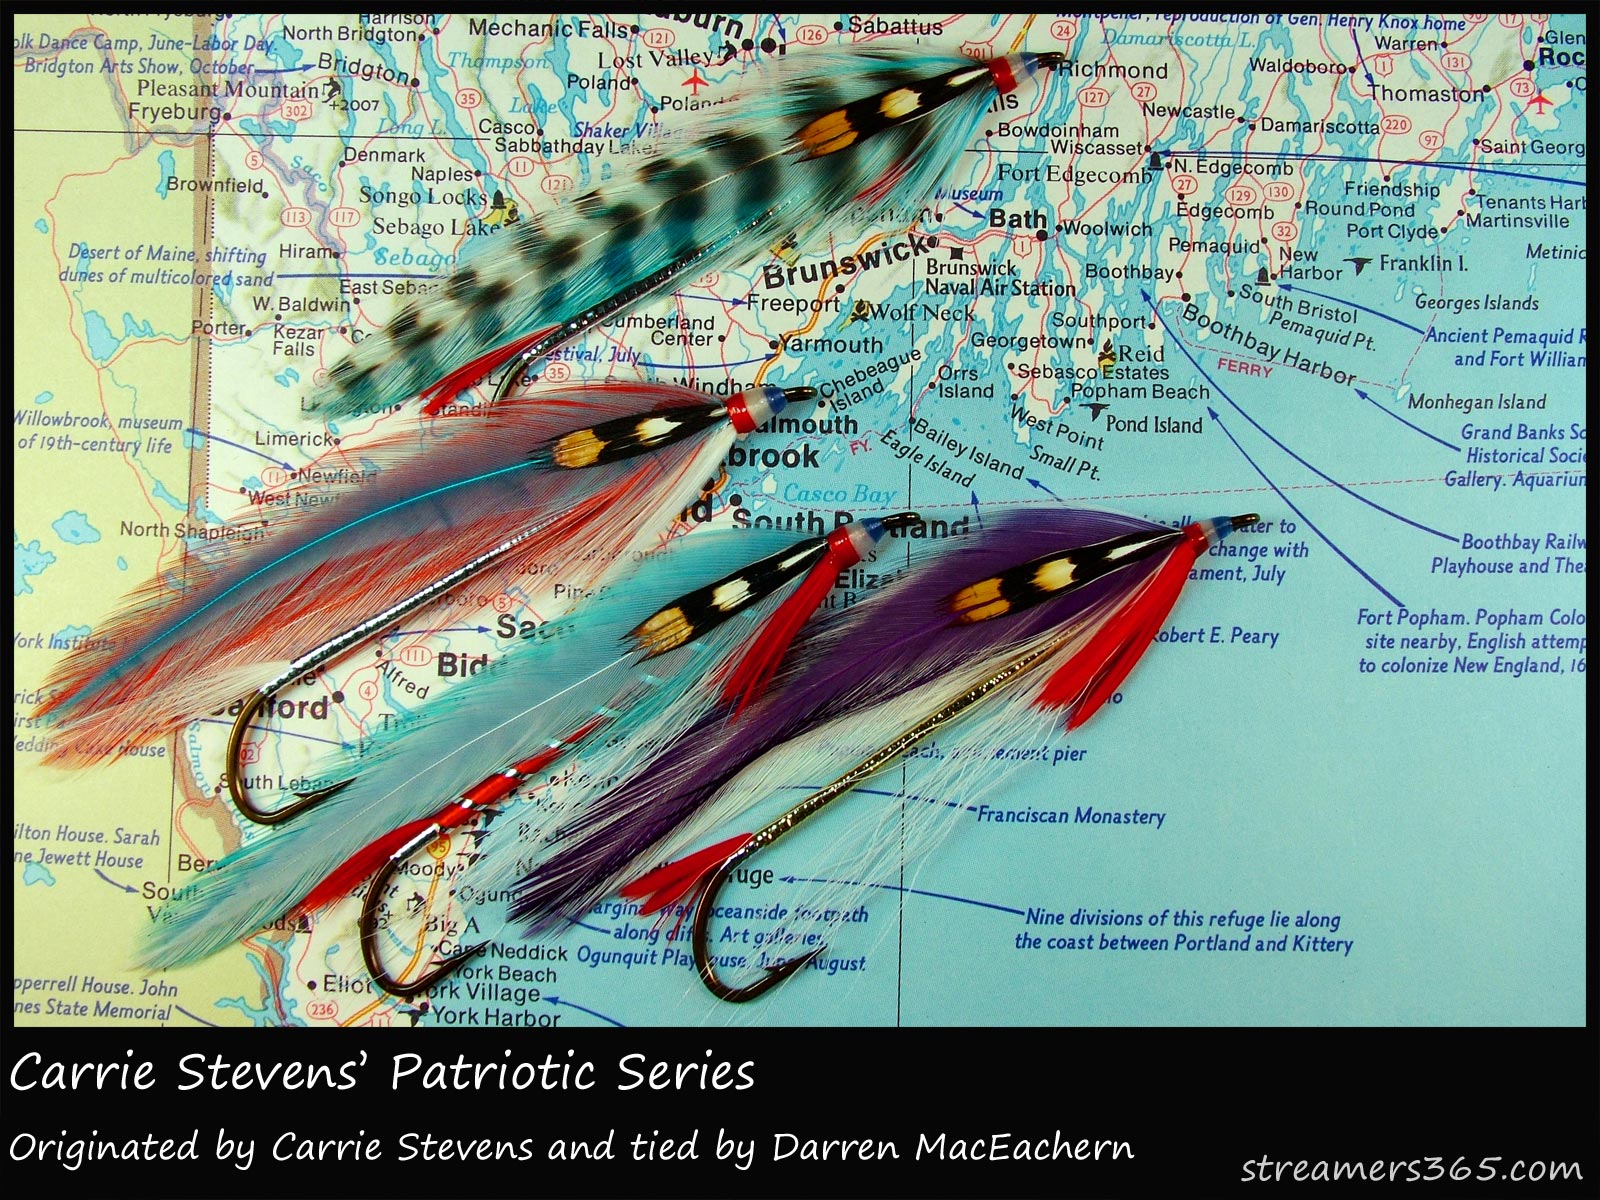 186 - Carrie Stevens' Patriotic Series, Global FlyFisher